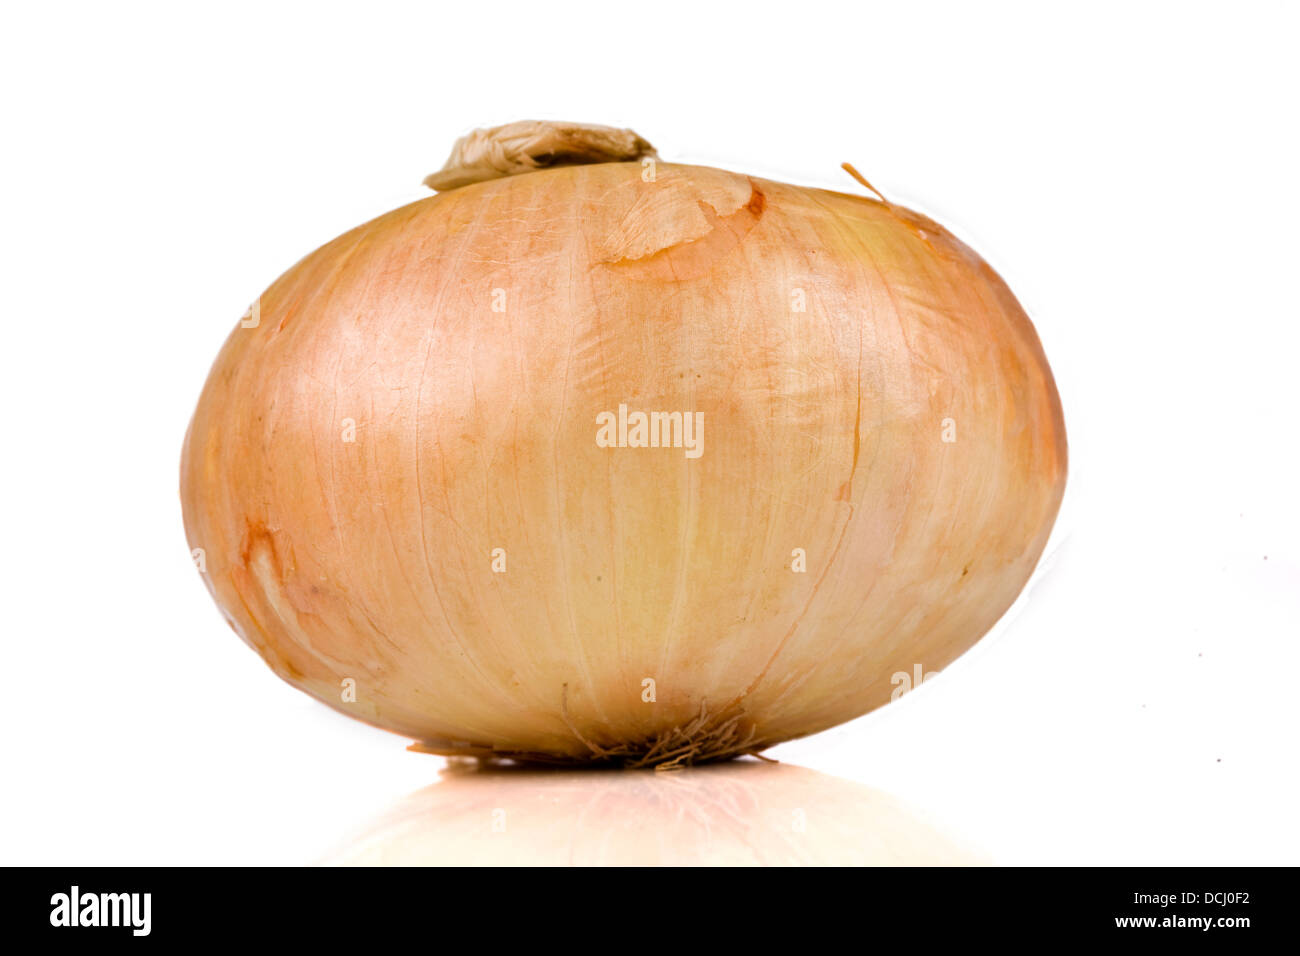 Vidalia sweet onion isolated on white Stock Photo